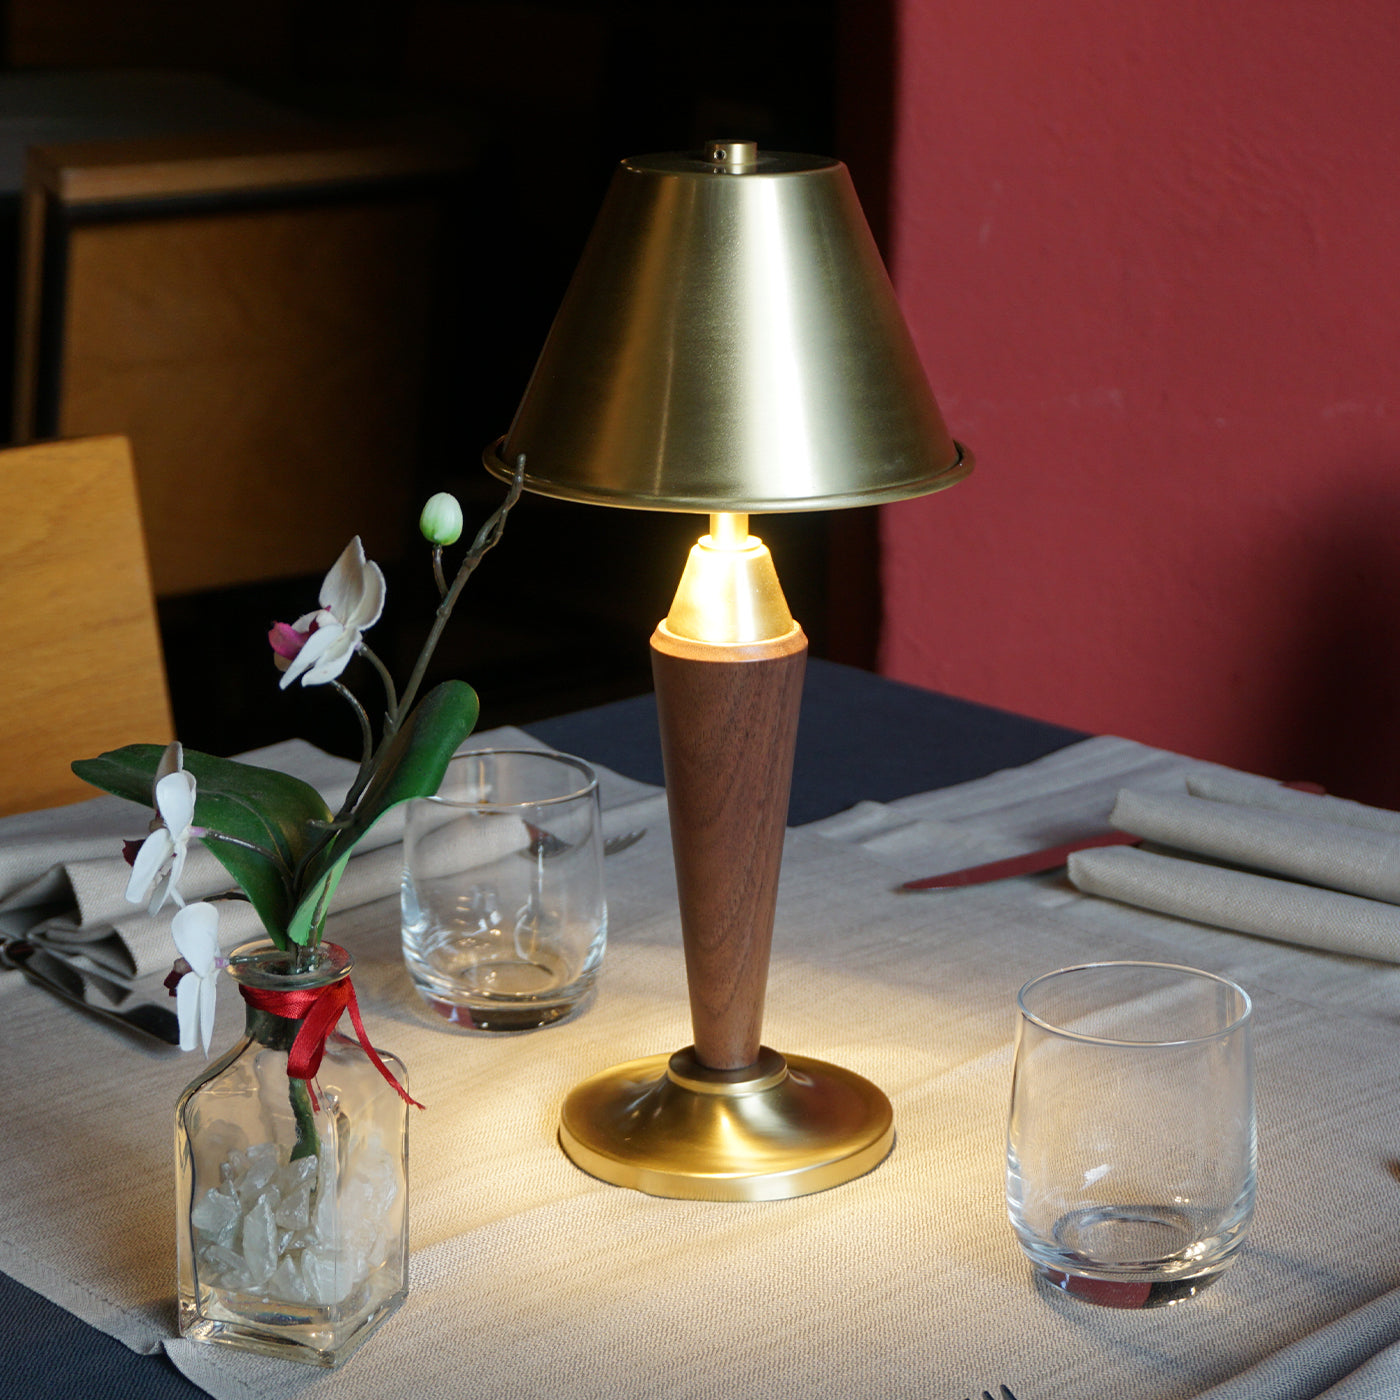 Alena OS Walnut Table Lamp by Studio Sagrada - Alternative view 1